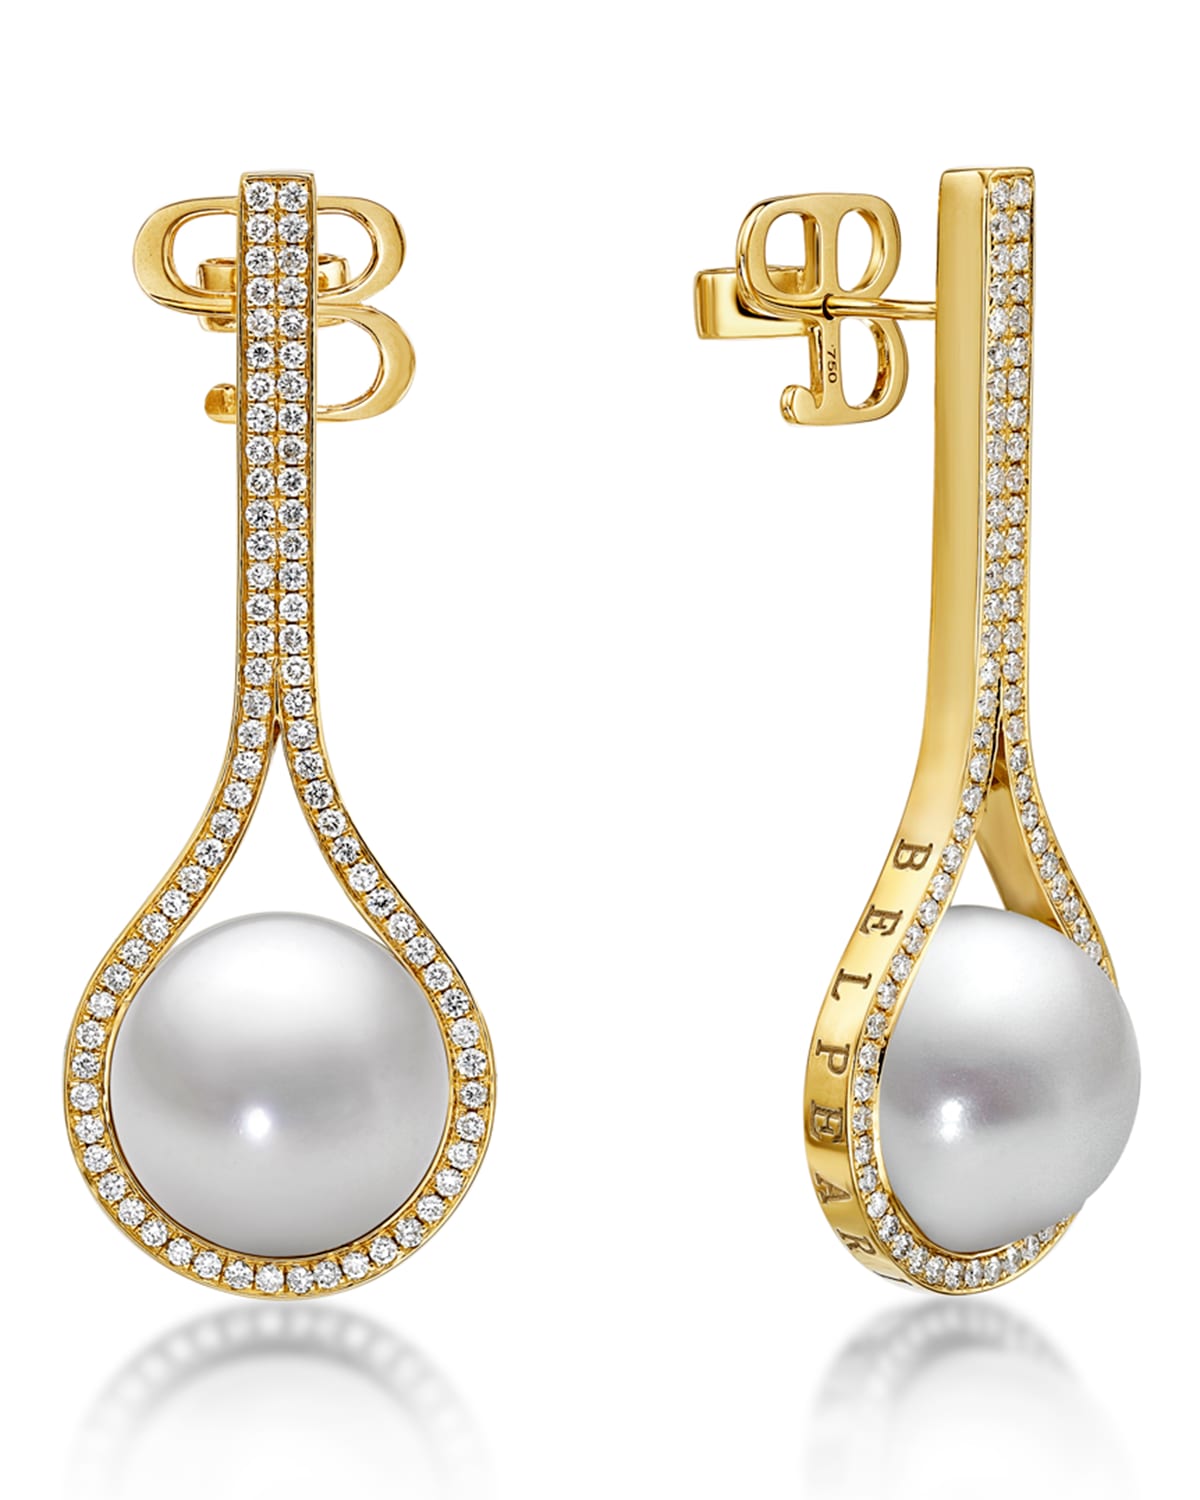 Belpearl Kobe Drop Pearl & Diamond Earrings